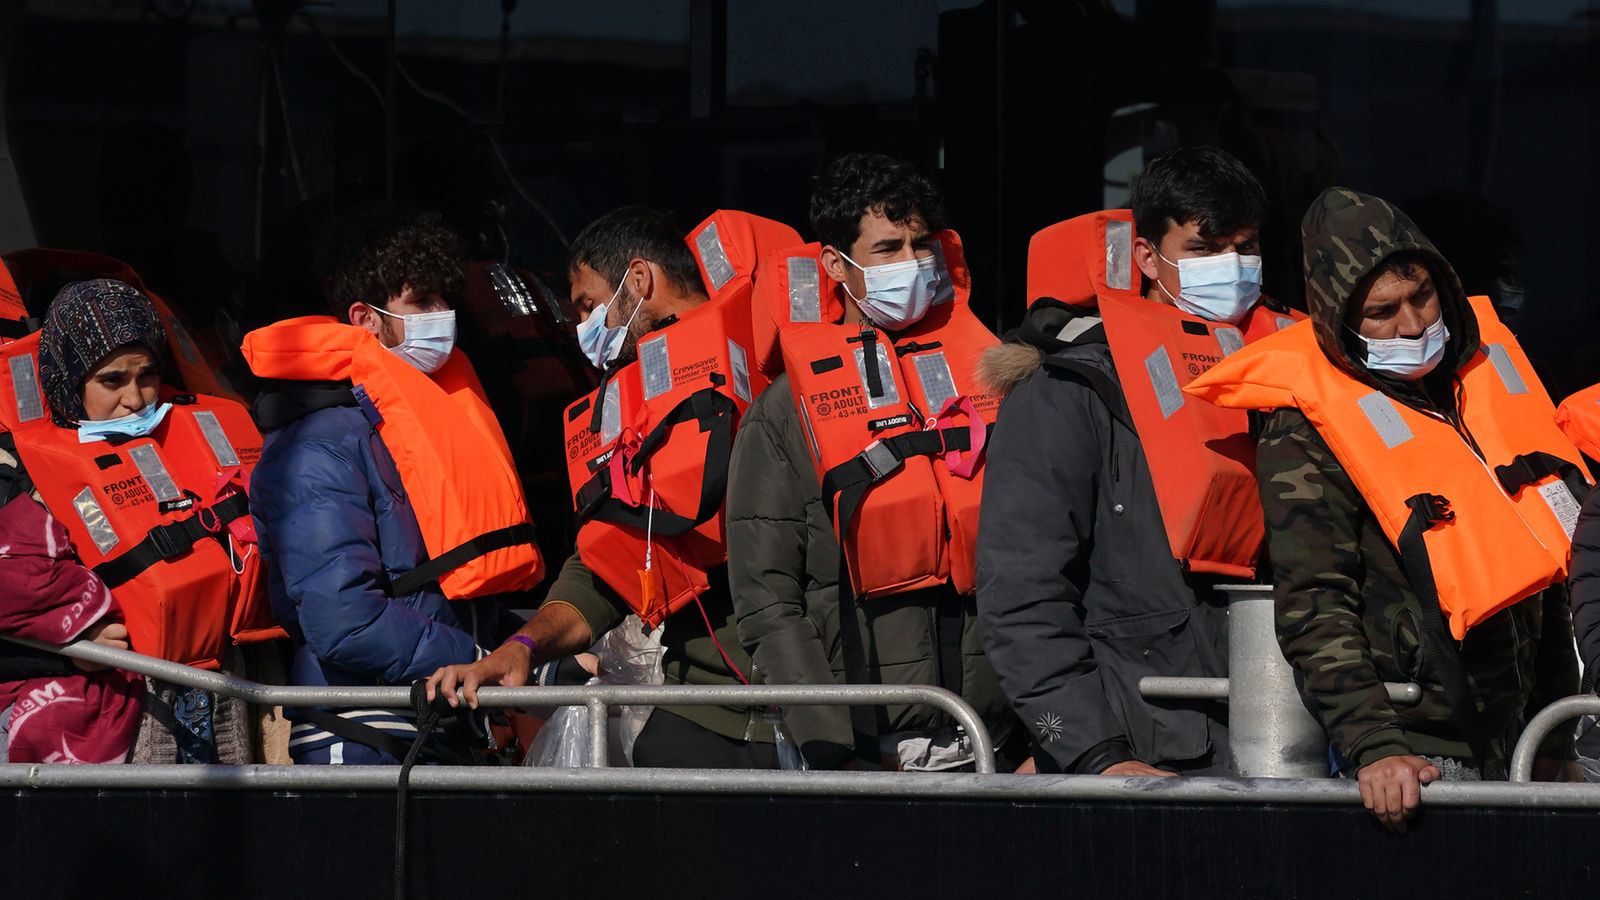 Photo of Transit de migrants : le ministre français de l’Intérieur affirme que le Royaume-Uni n’a pas payé l’argent promis dans le cadre de l’accord pour lutter contre les voyages illégaux |  nouvelles du monde